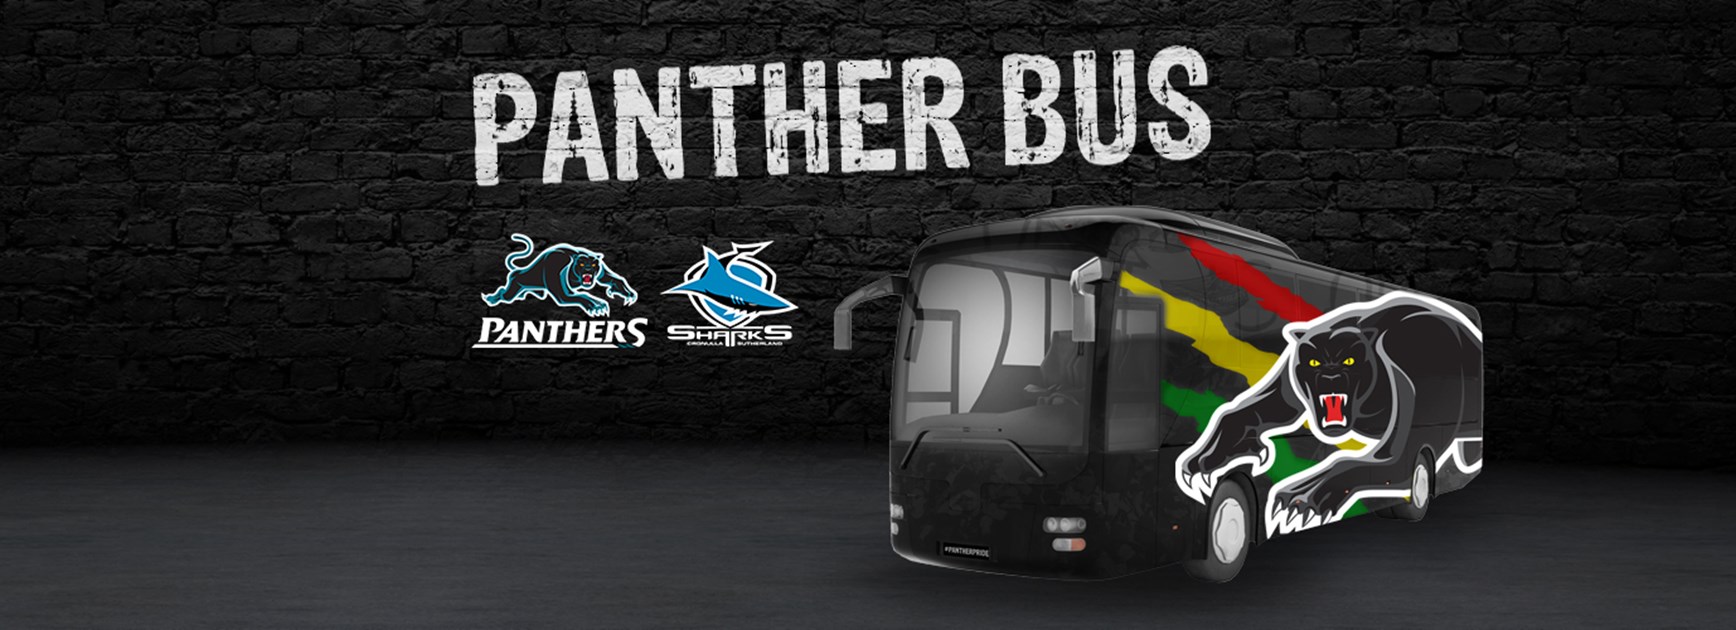 Panther Bus: Round 7